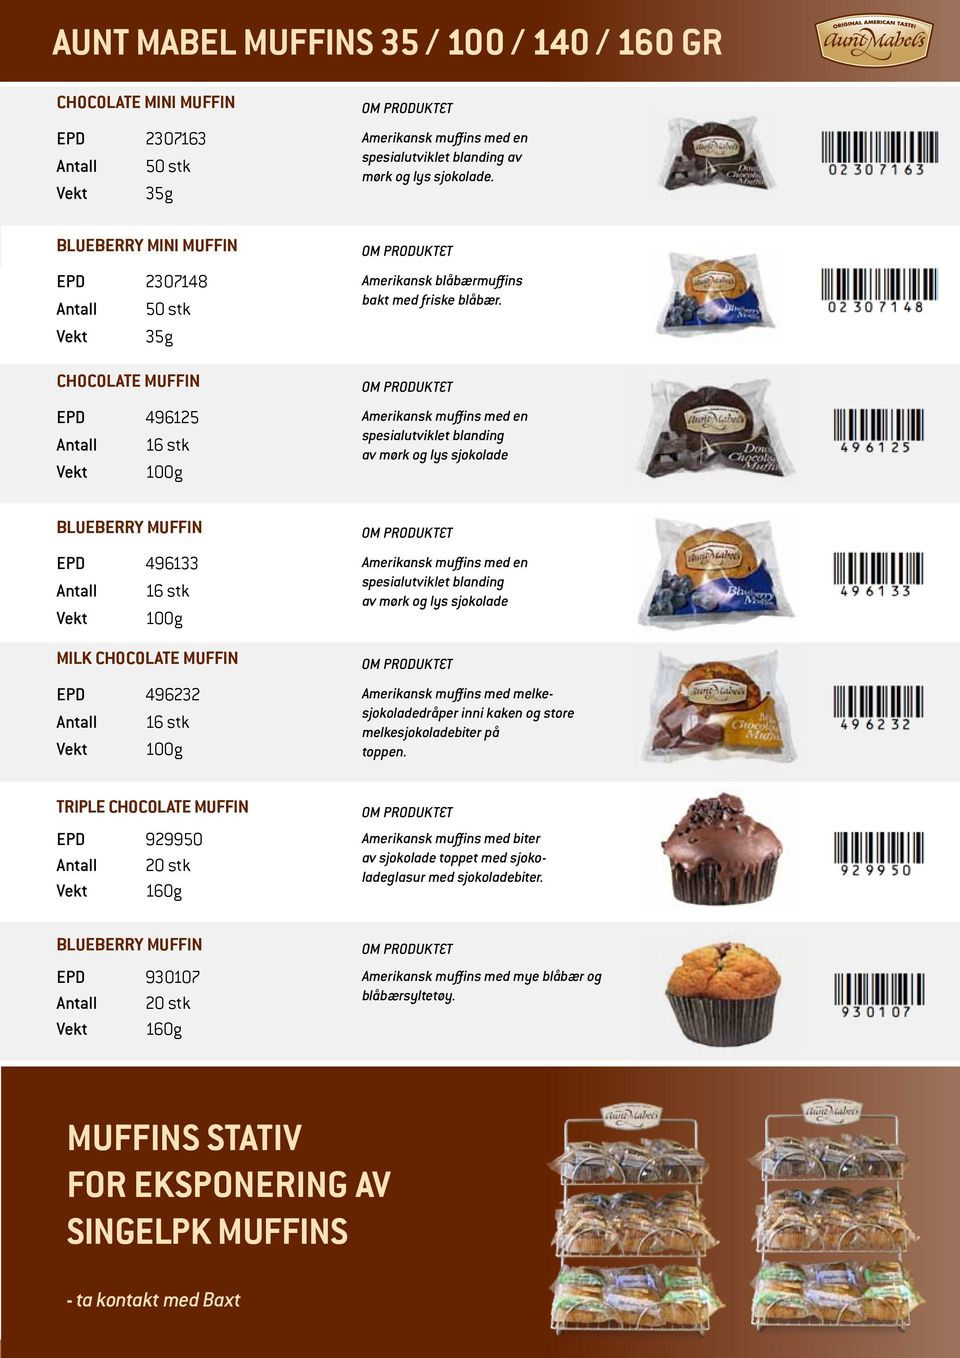 Amerikansk muffins med en spesialutviklet blanding av mørk og lys sjokolade Blueberry Muffin EPD 496133 Antall 16 stk Vekt 100g Milk Chocolate Muffin EPD 496232 Antall 16 stk Vekt 100g Amerikansk